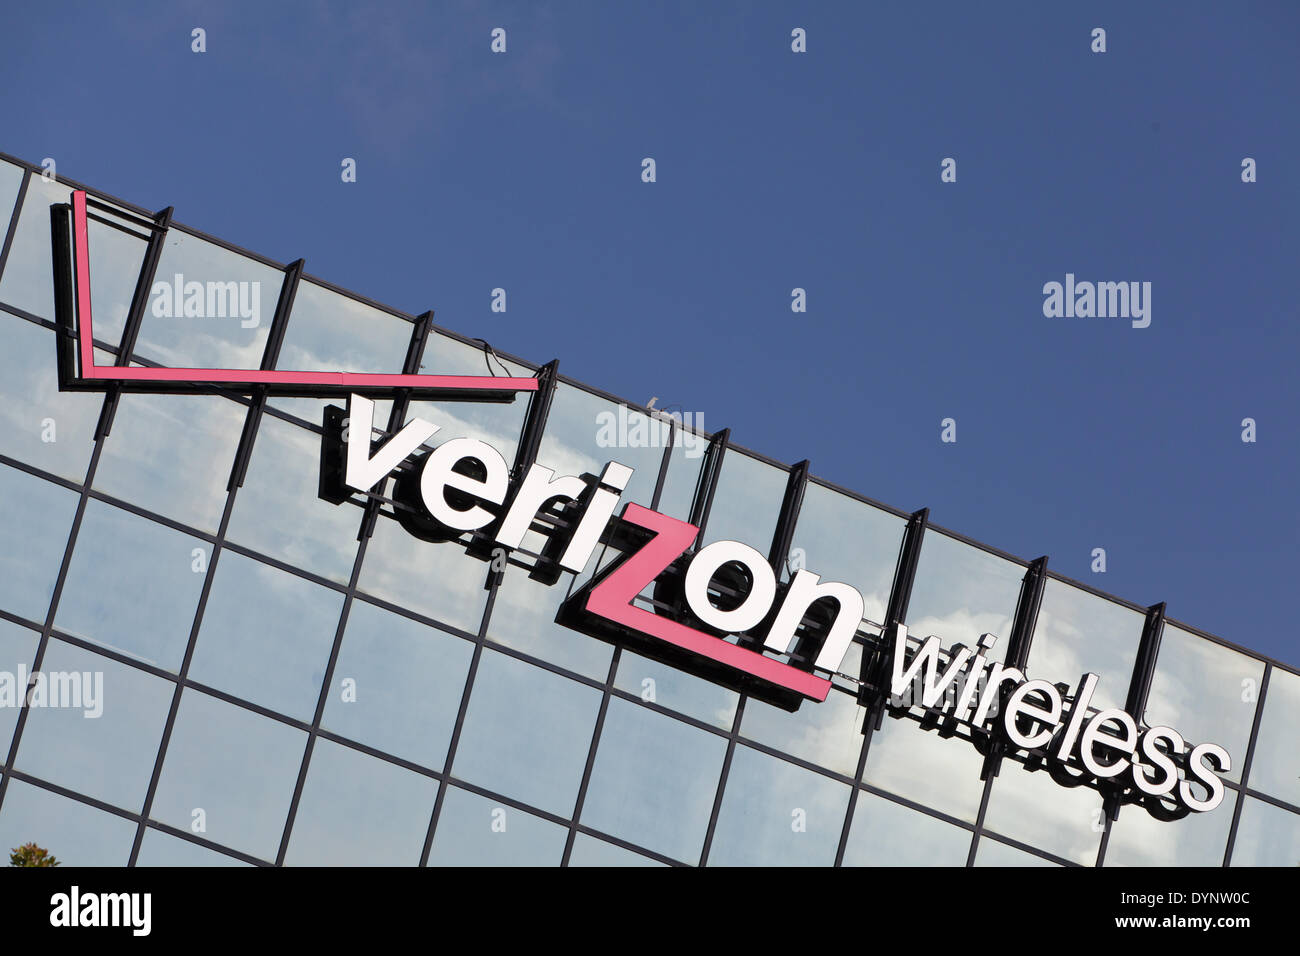 Il logo aziendale di Verizon Wireless sul mirroring-bicchiere di un edificio per uffici, in aprile 2013. Foto Stock